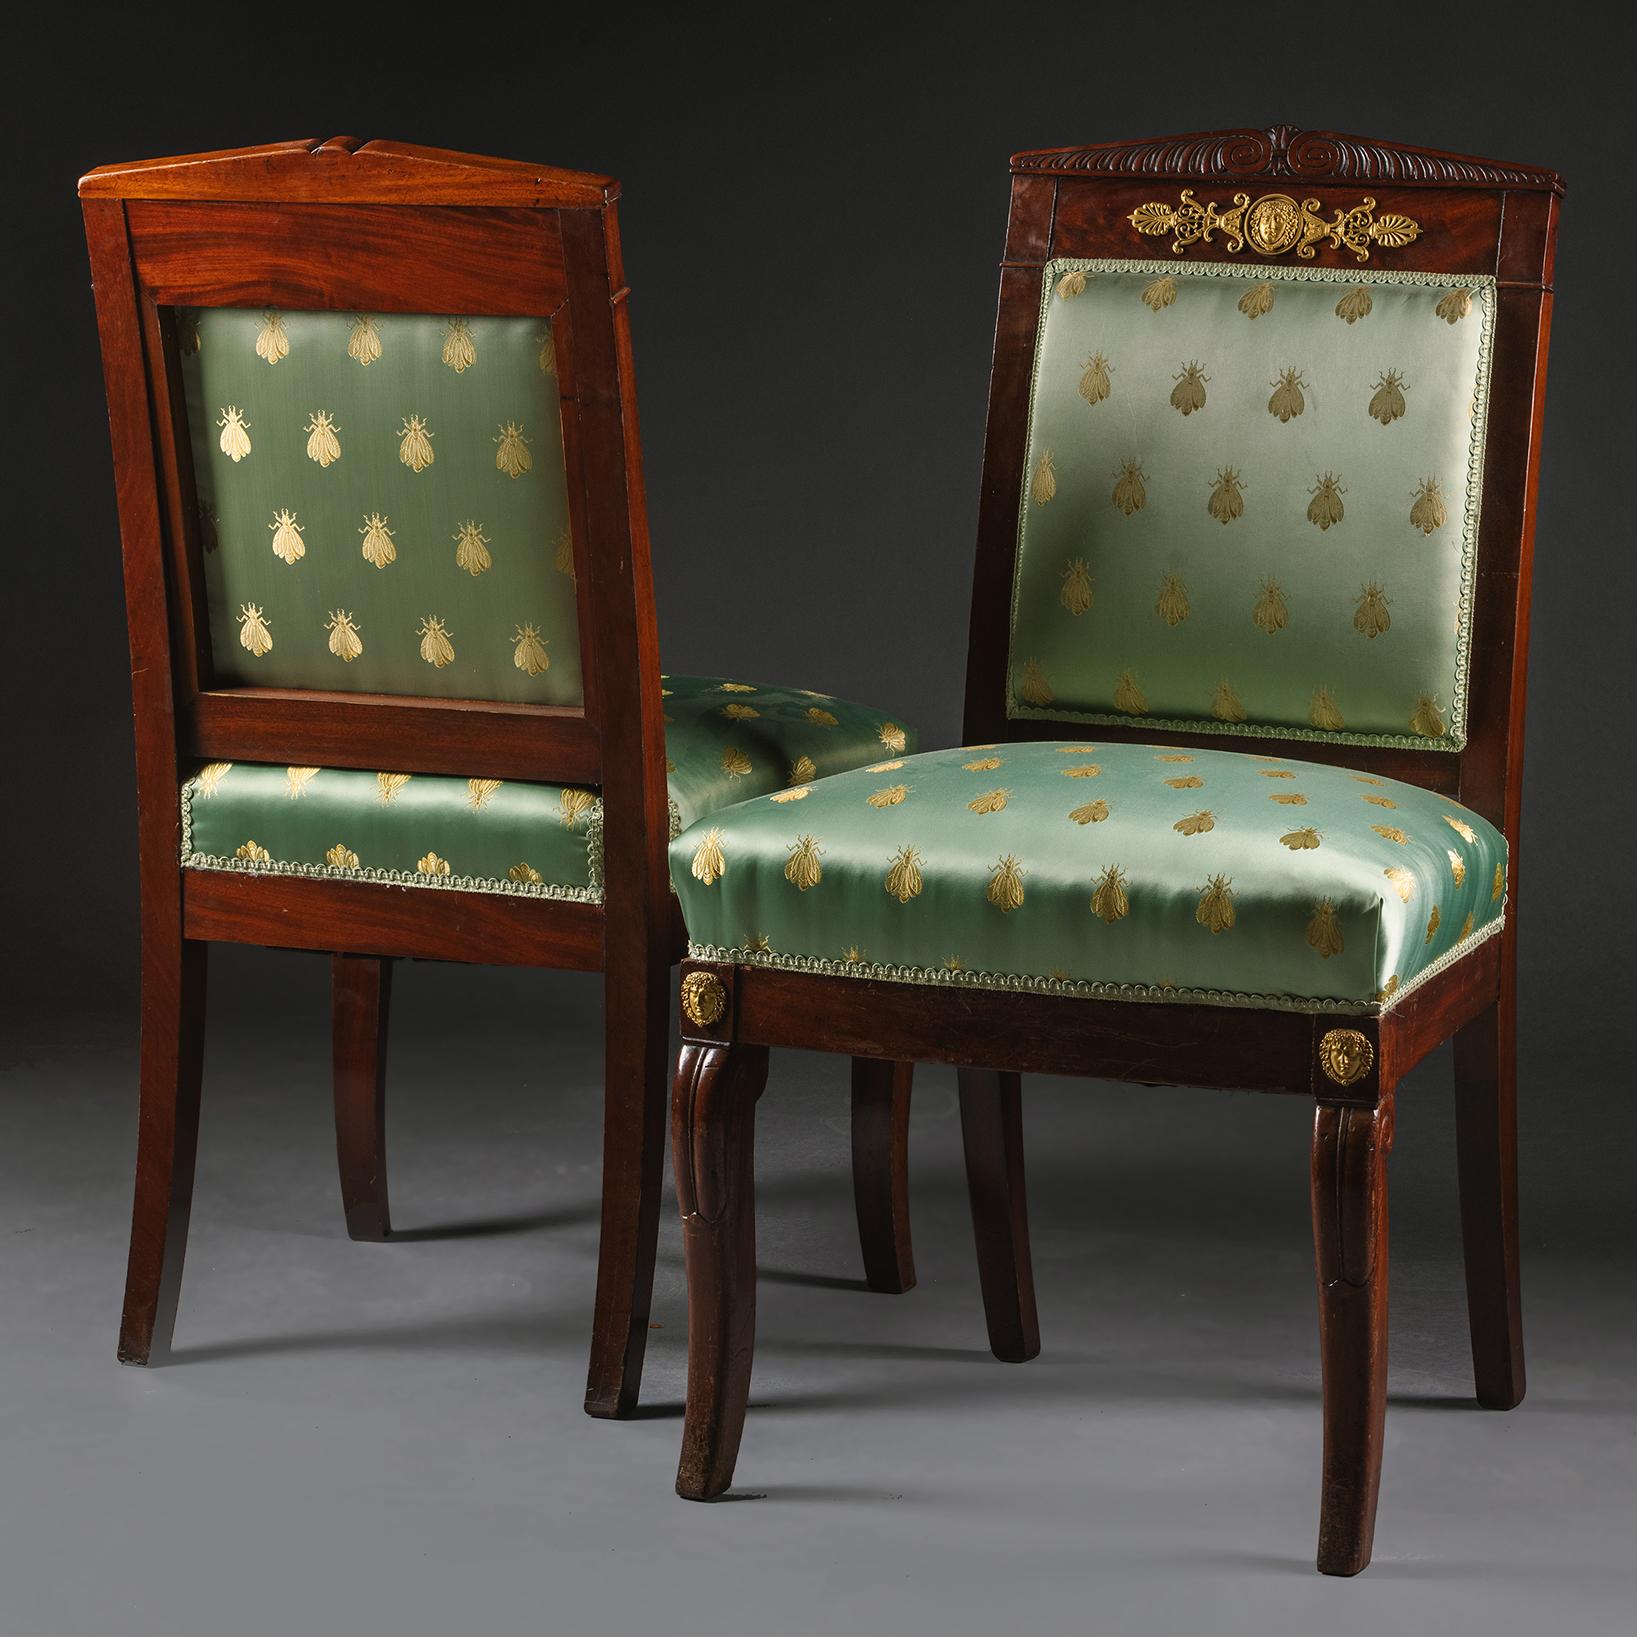 Ein Paar vergoldete Bronzebeistellstühle aus der Empirezeit.
 
Französisch, um 1820.